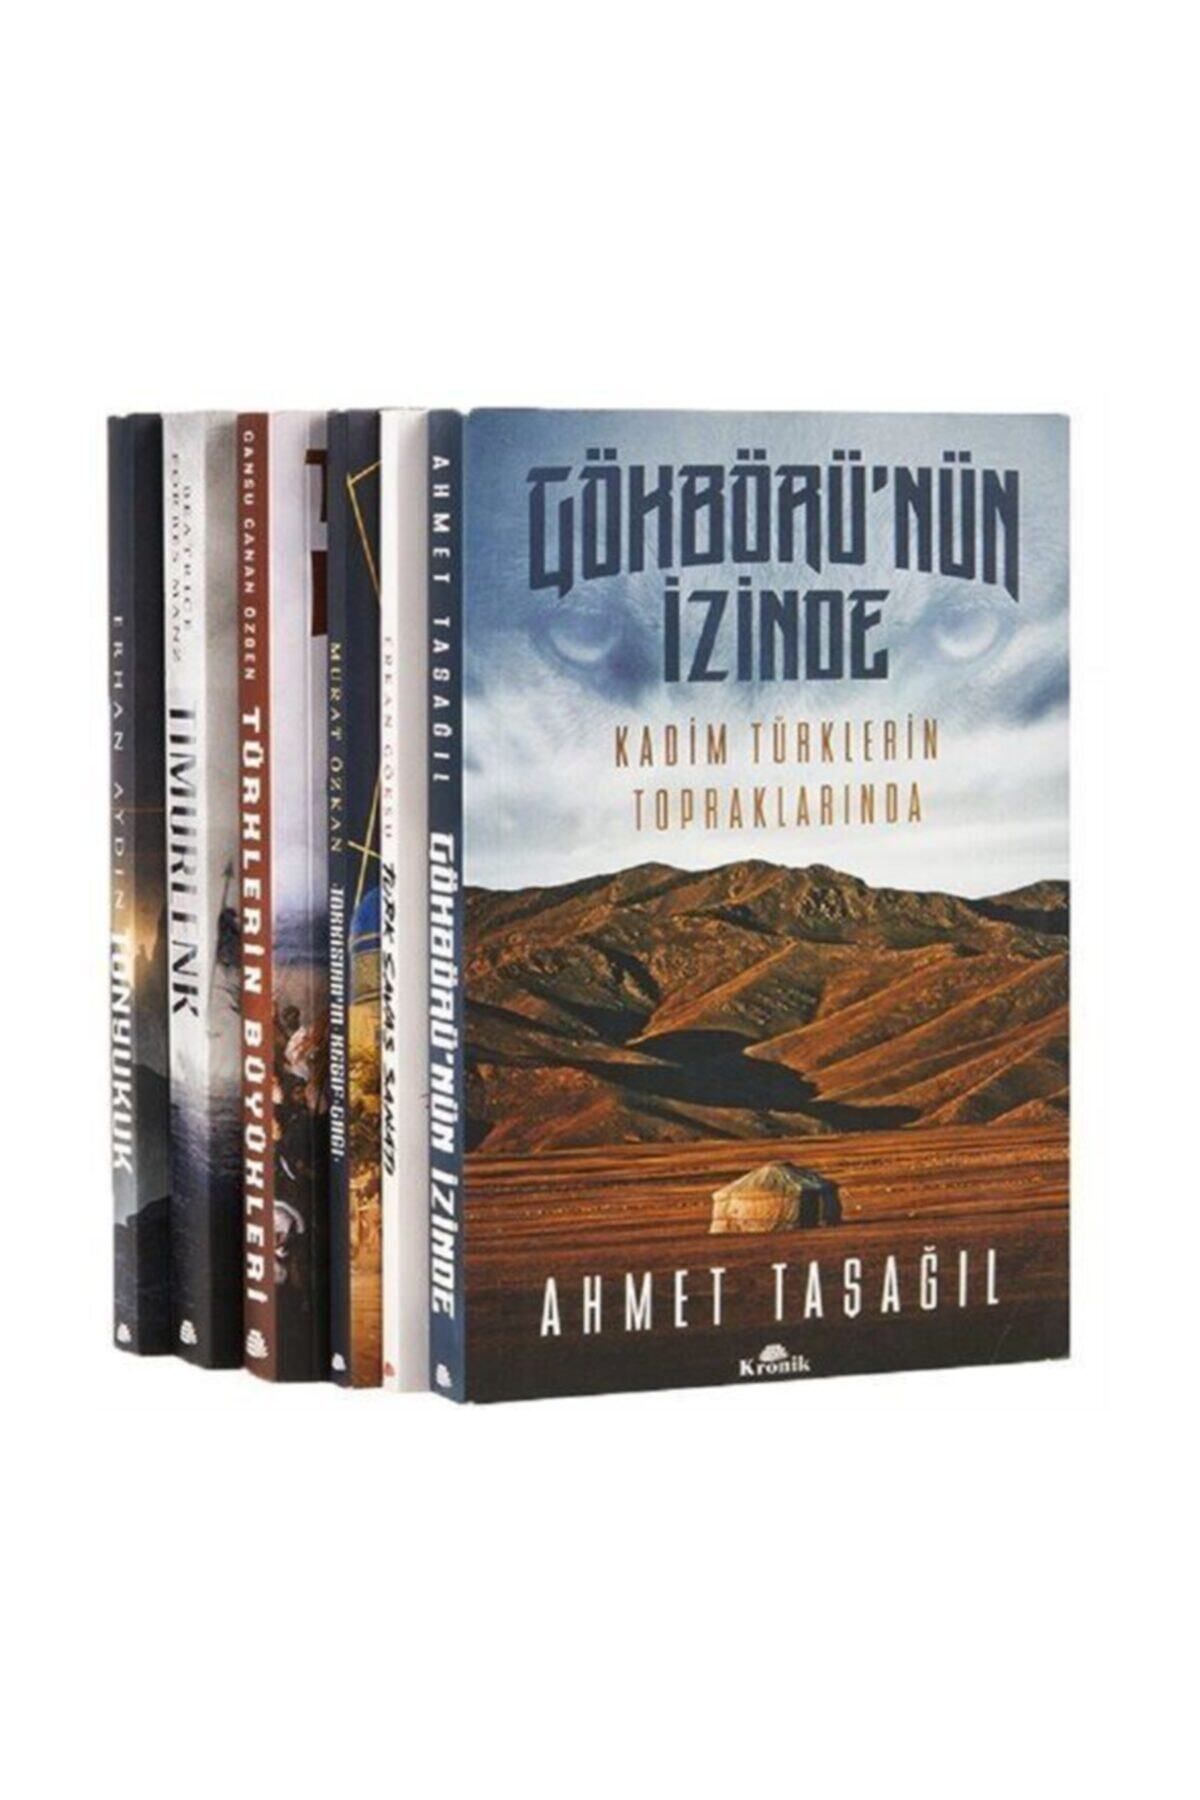 Kronik Kitap Türklerin Kadim Tarihi Seti (6 KİTAP TAKIM)